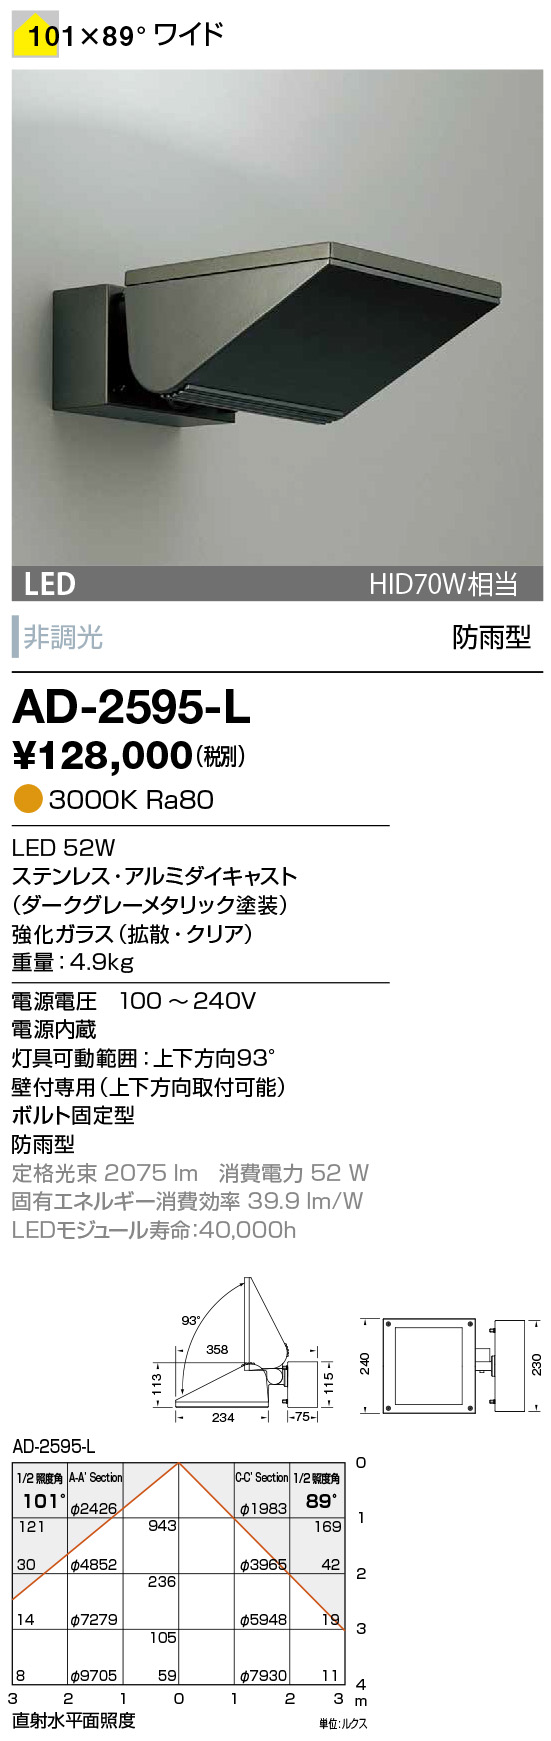 山田照明 山田照明 照明器具 激安 AD-2598-L ウォールライト（yamada） 屋外照明